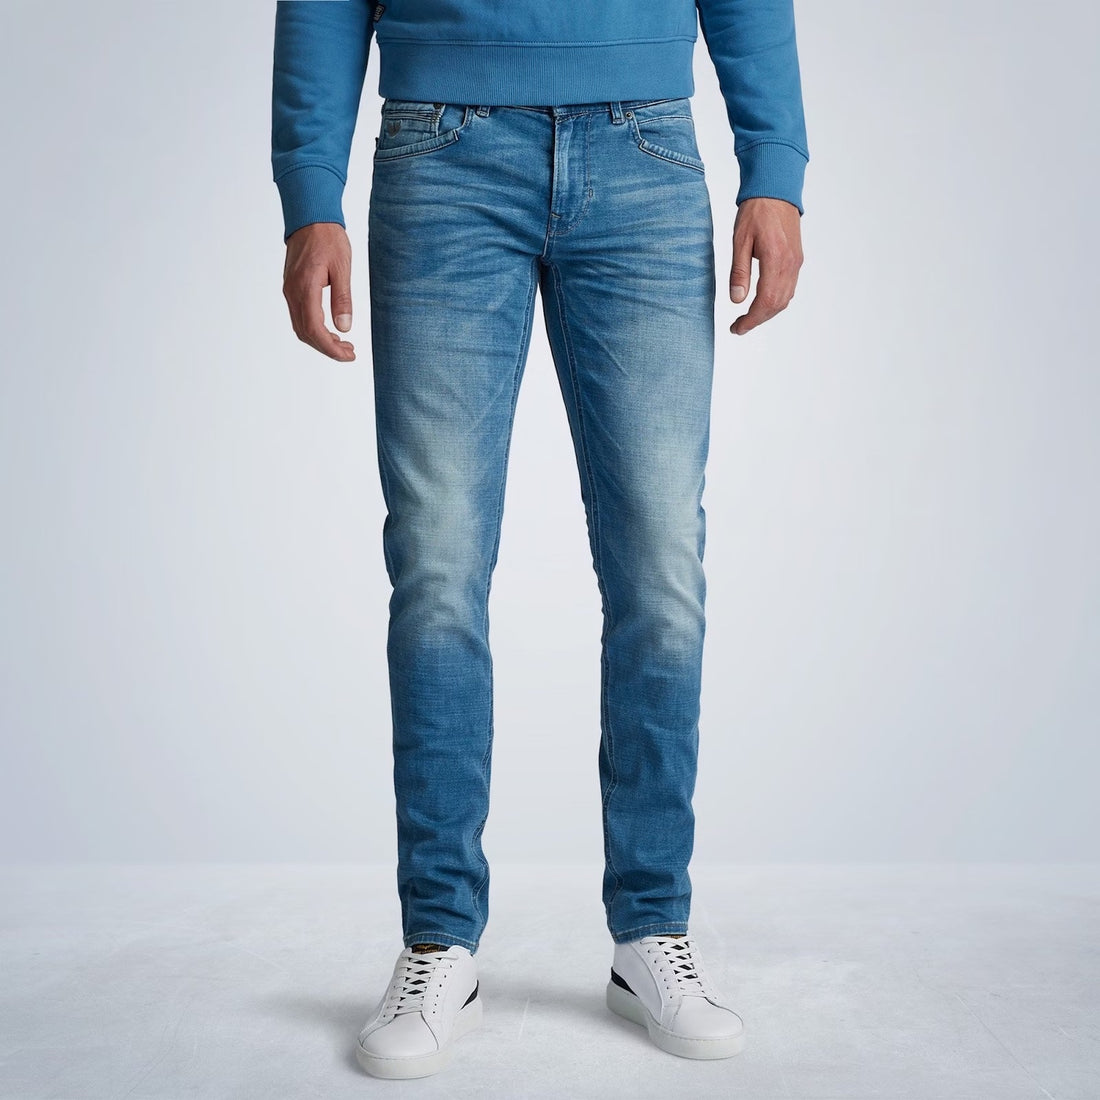 De PME Legend Tailwheel jeans is een gedetailleerde slim fit jeans met een smalle pijp. De mix van katoen en elastaan geeft de broek een zacht en comfortabel gevoel. De zachte left hand structuur zorgt voor extra draagcomfort. Deze PME legend spijkerbroek heeft een subtiele, blauwe SMB (Soft Mid Blue) wassing en mooie whiskers op de bovenbenen. Beide voorzakken worden verstevigd met een kenmerkend stuk jeans. De PME Legend borduursels op de coin pocket en de rechter achterzak maken het design af.